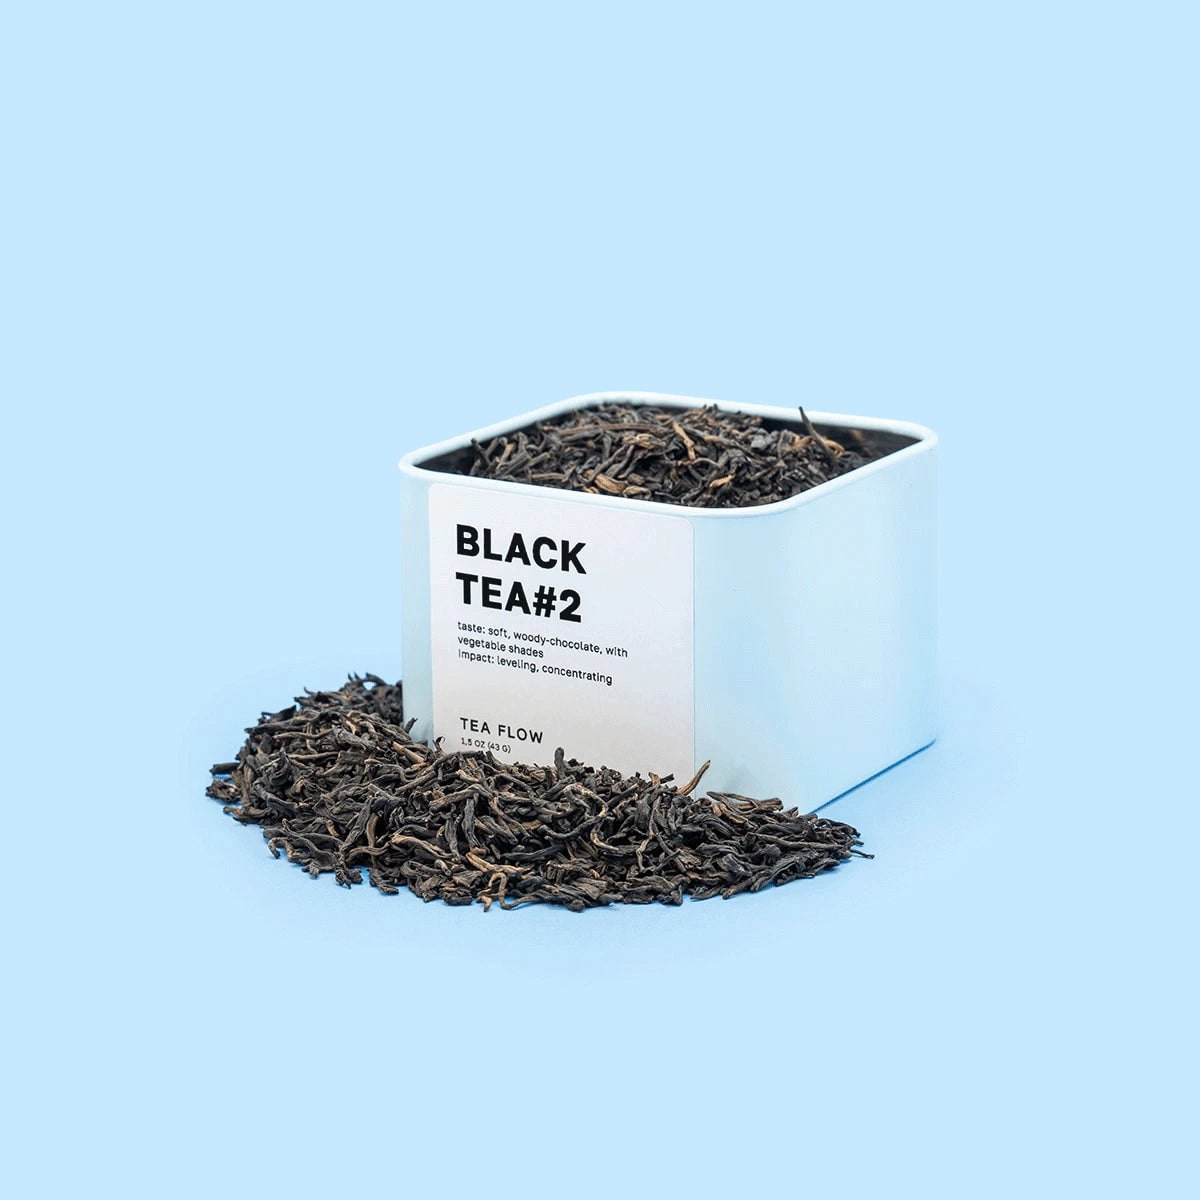 BLACK TEA #2